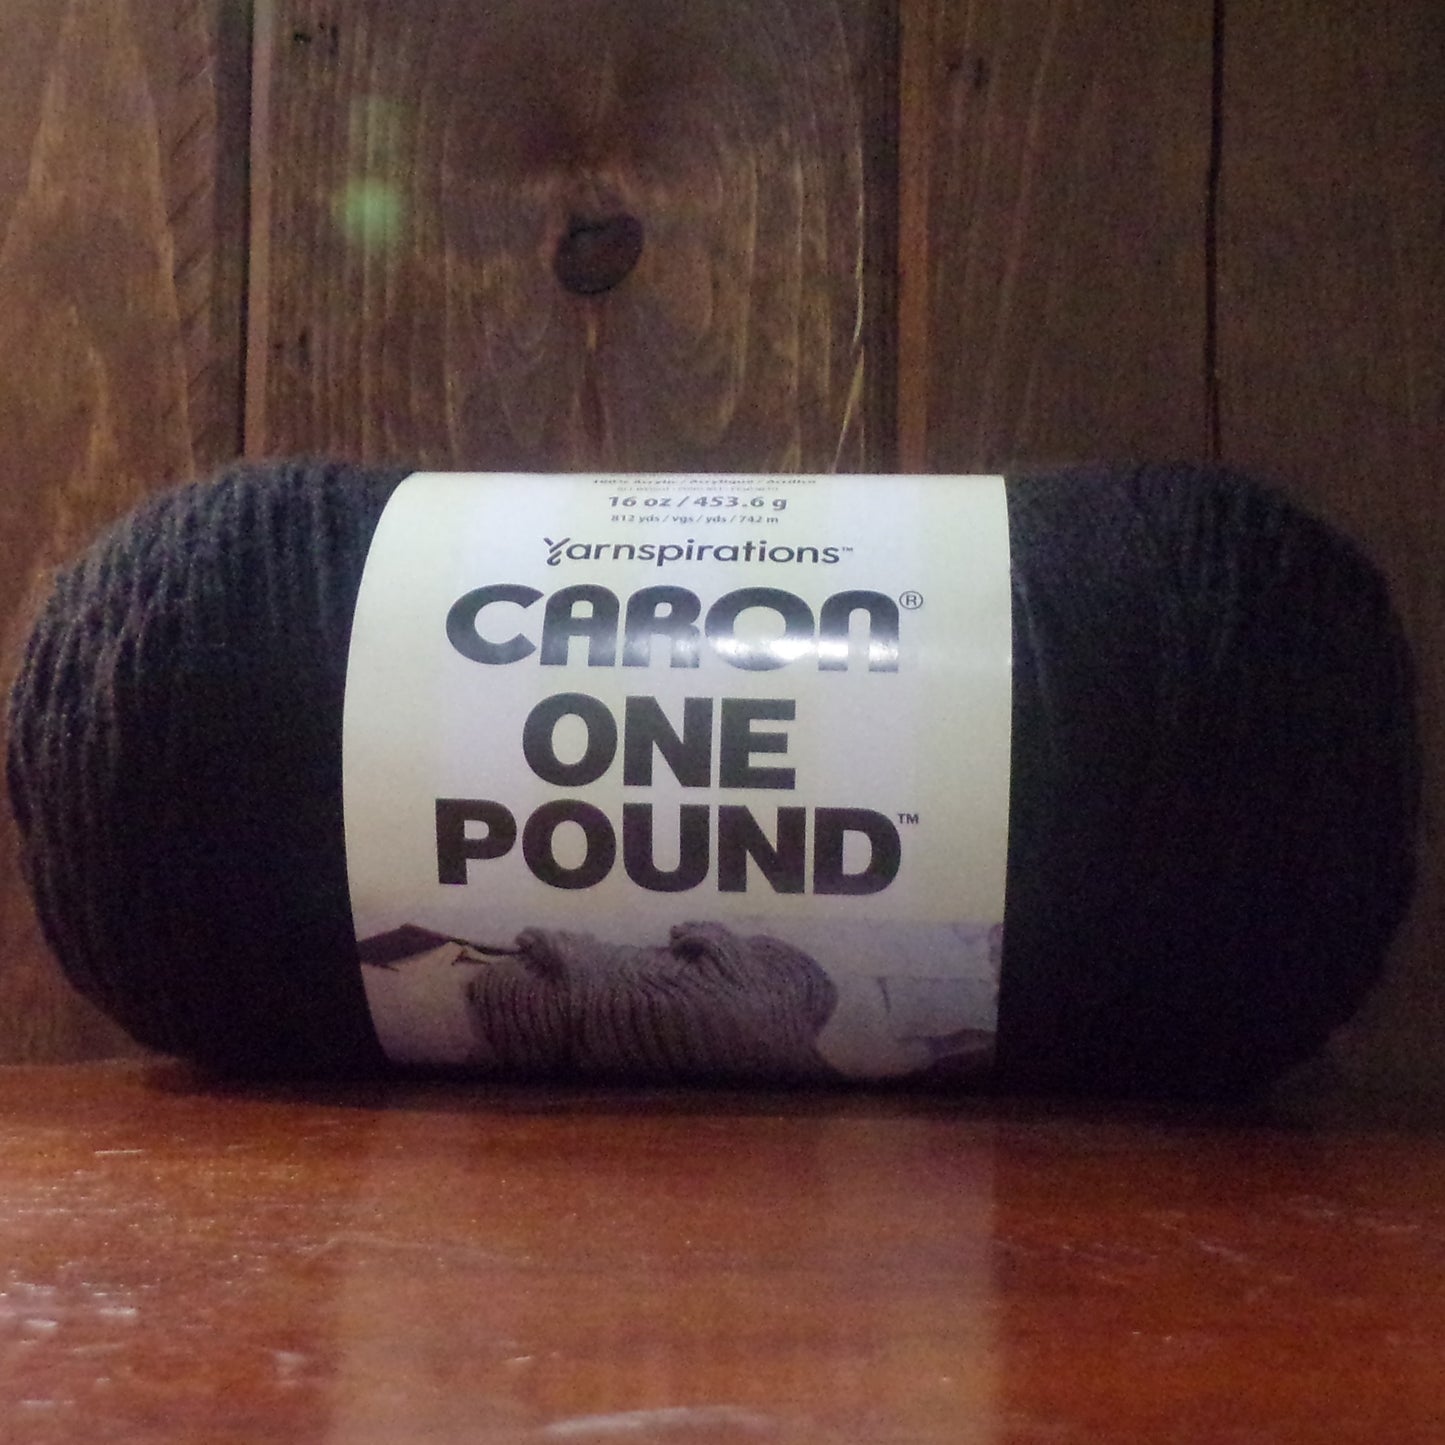 Caron One Pound